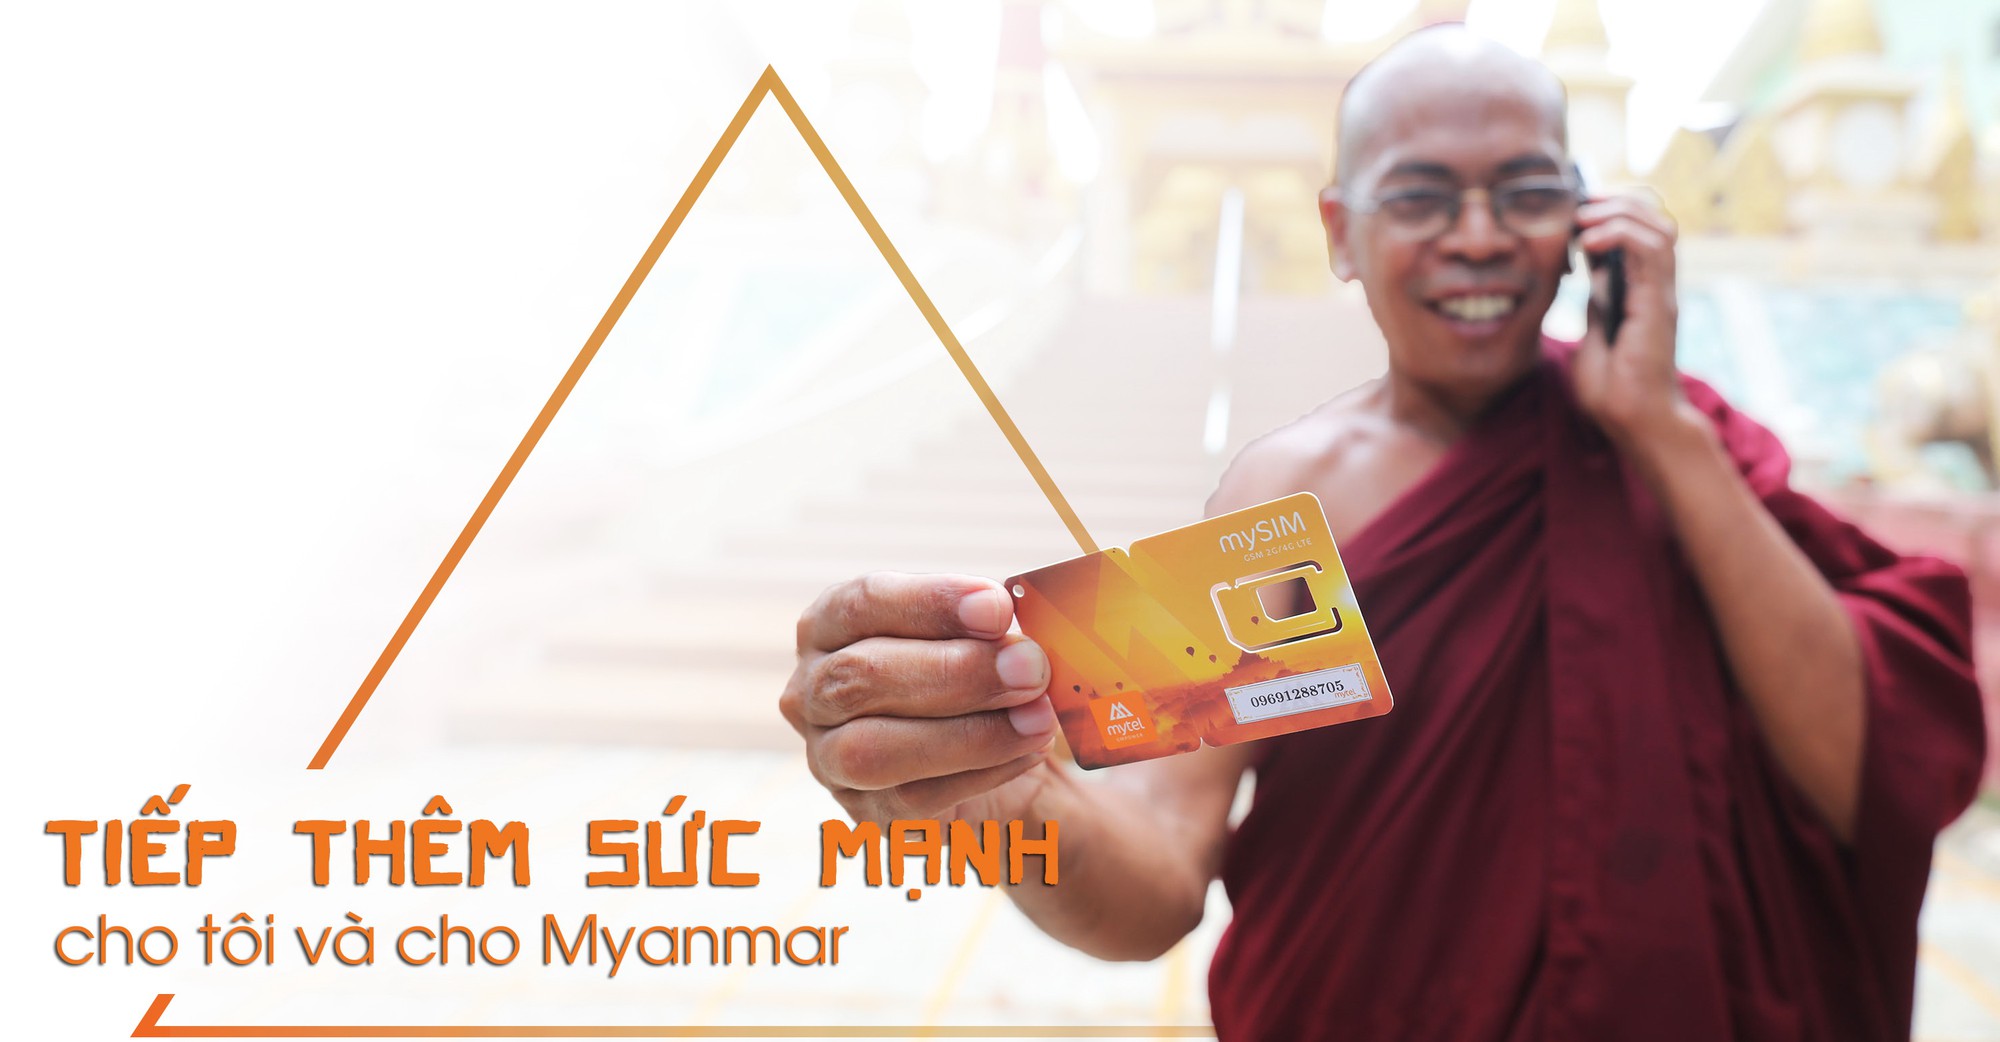 Mytel đưa 4G tiếp thêm sức mạnh cho Myanmar - Ảnh 2.